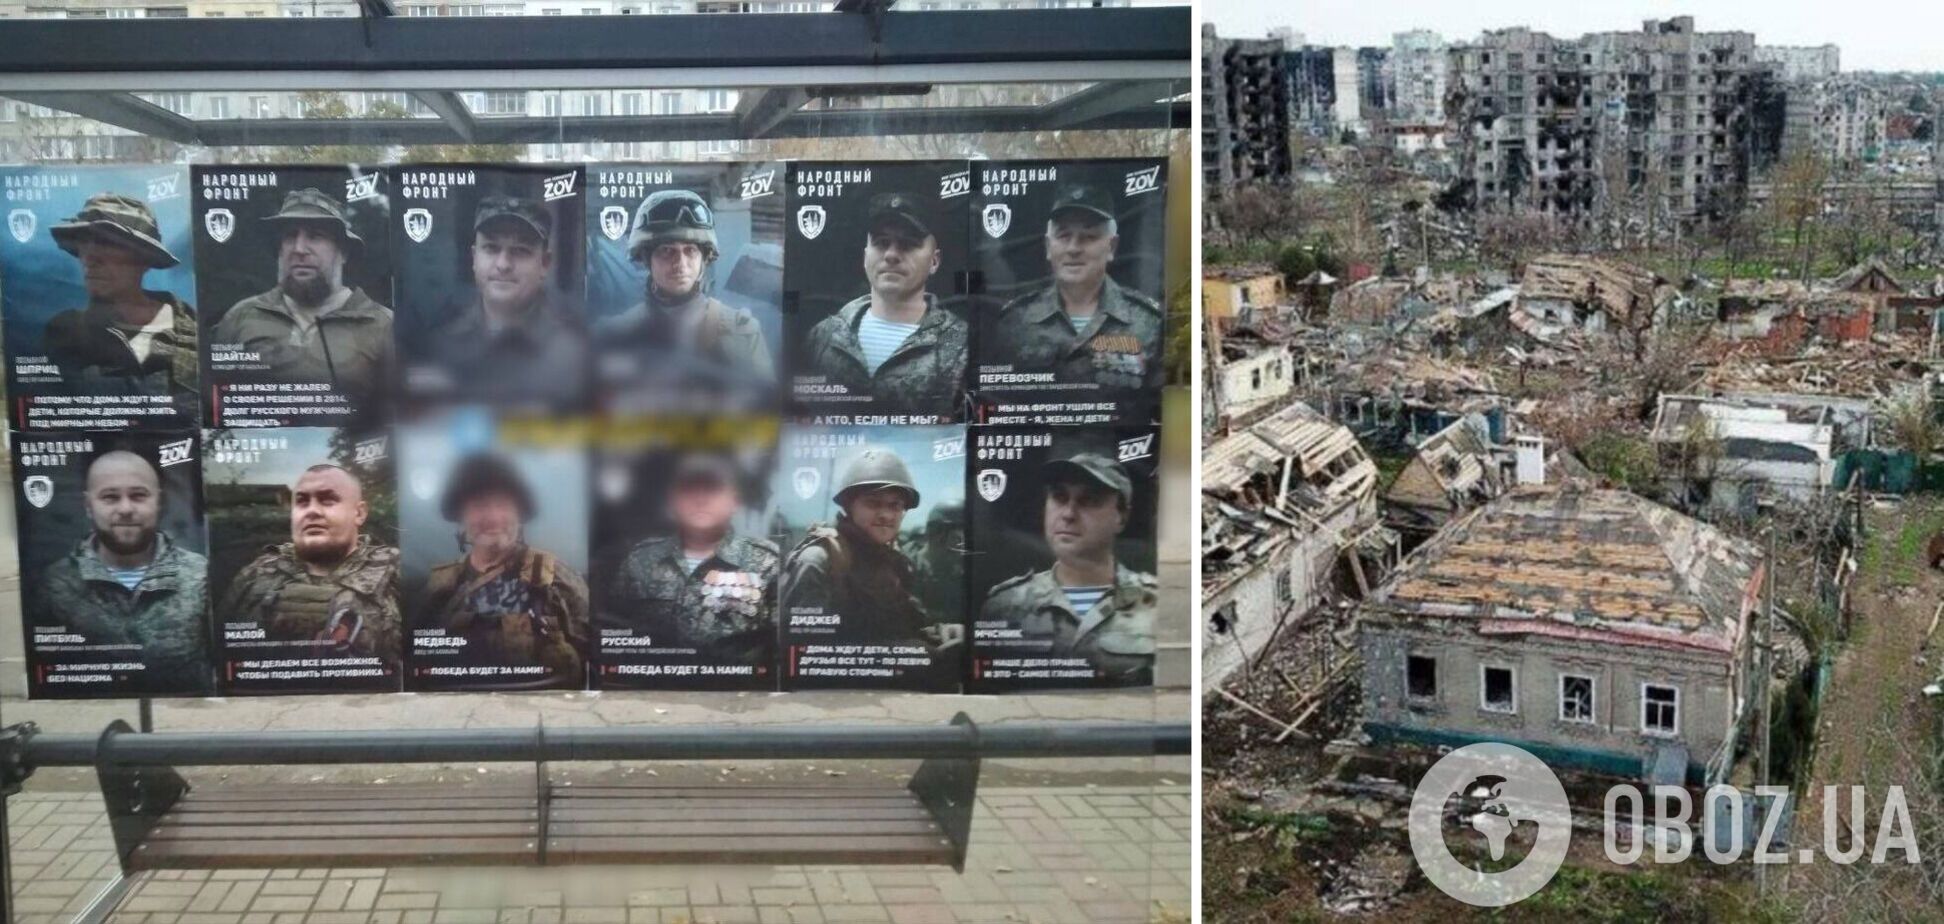 Оккупанты в Мариуполе разместили на остановках портреты захватчиков, которые убивали украинцев и уничтожали город. Фото